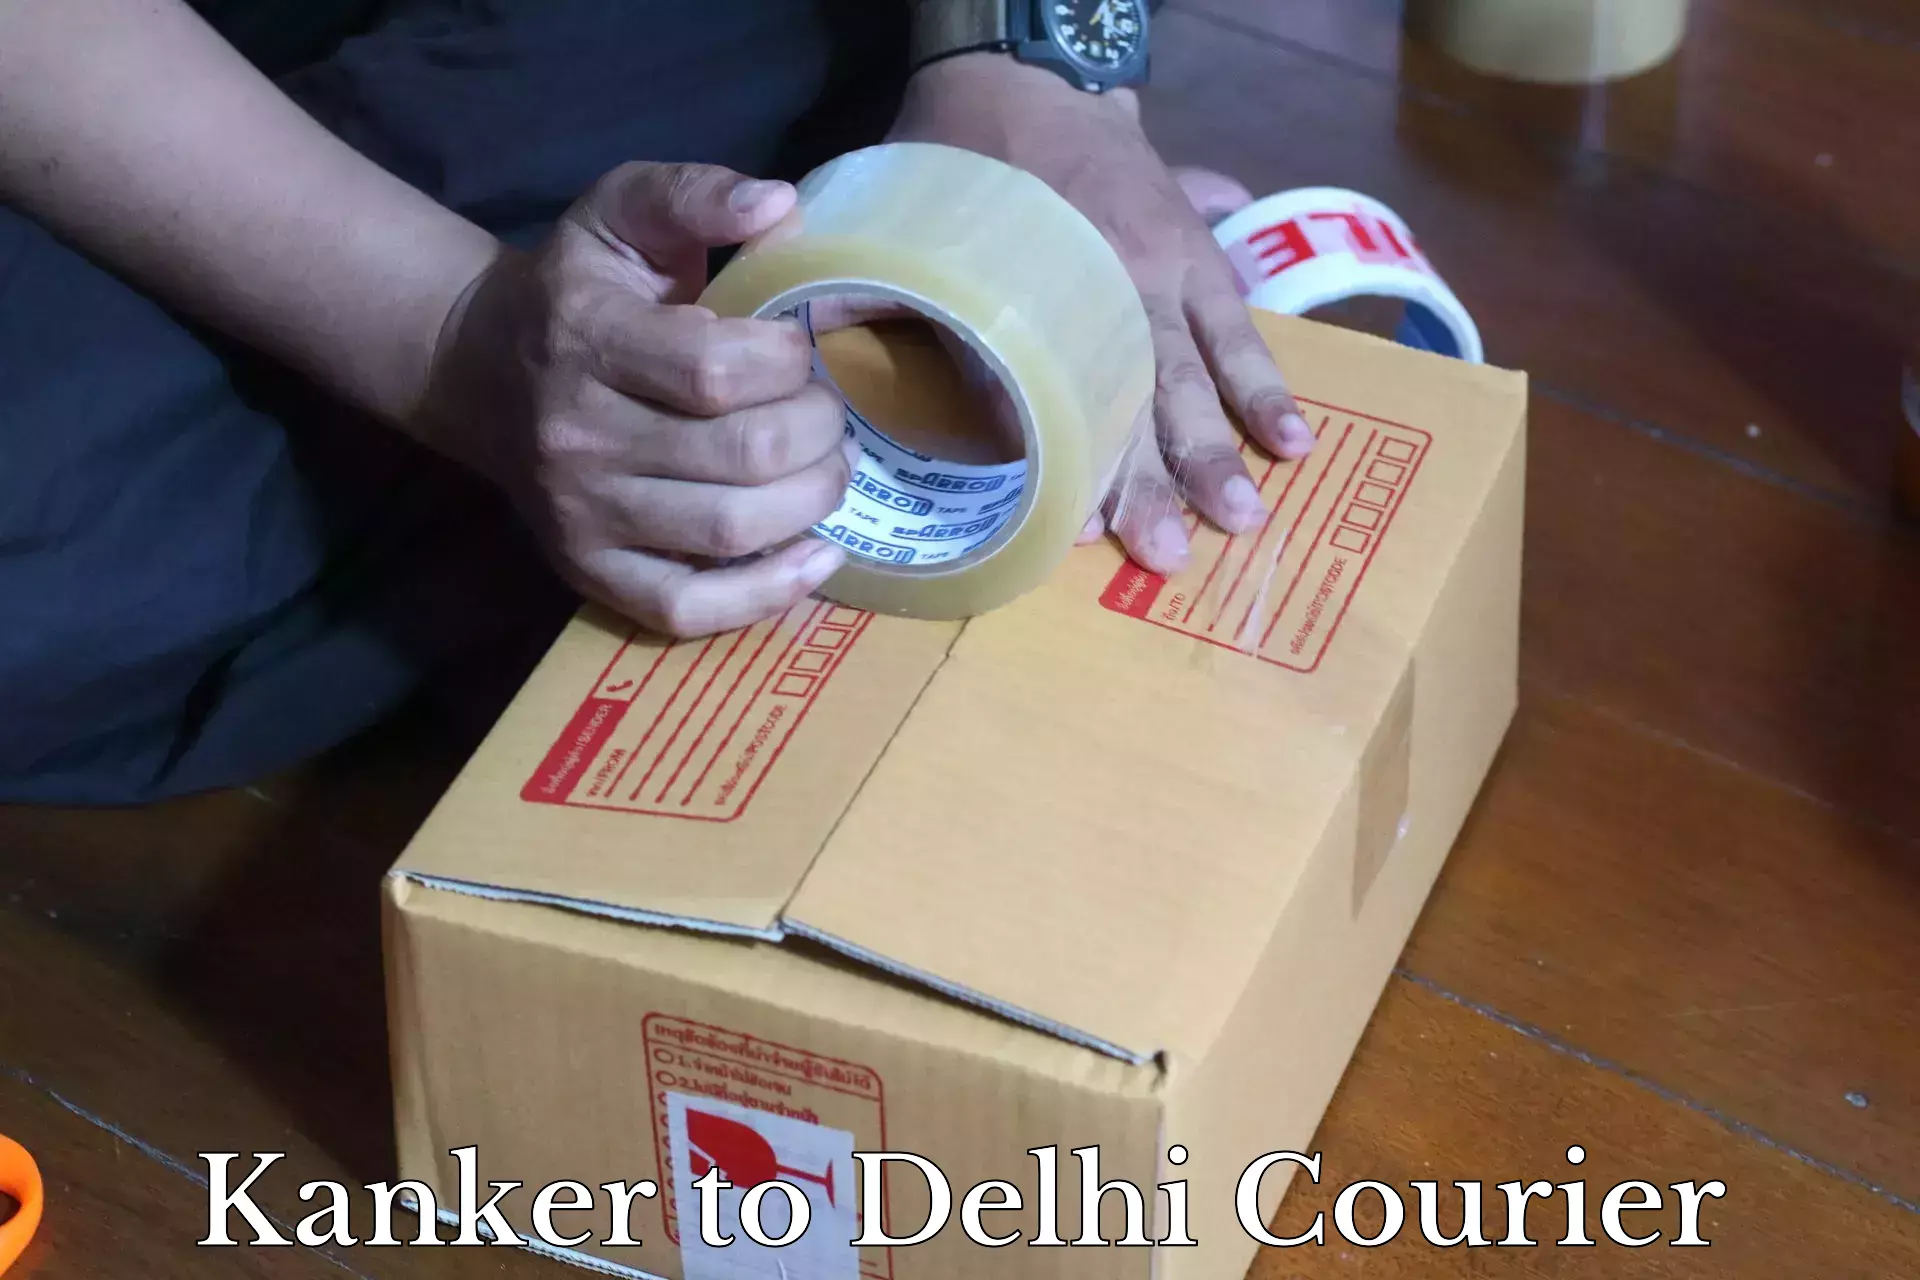 Modern courier technology Kanker to Ashok Vihar